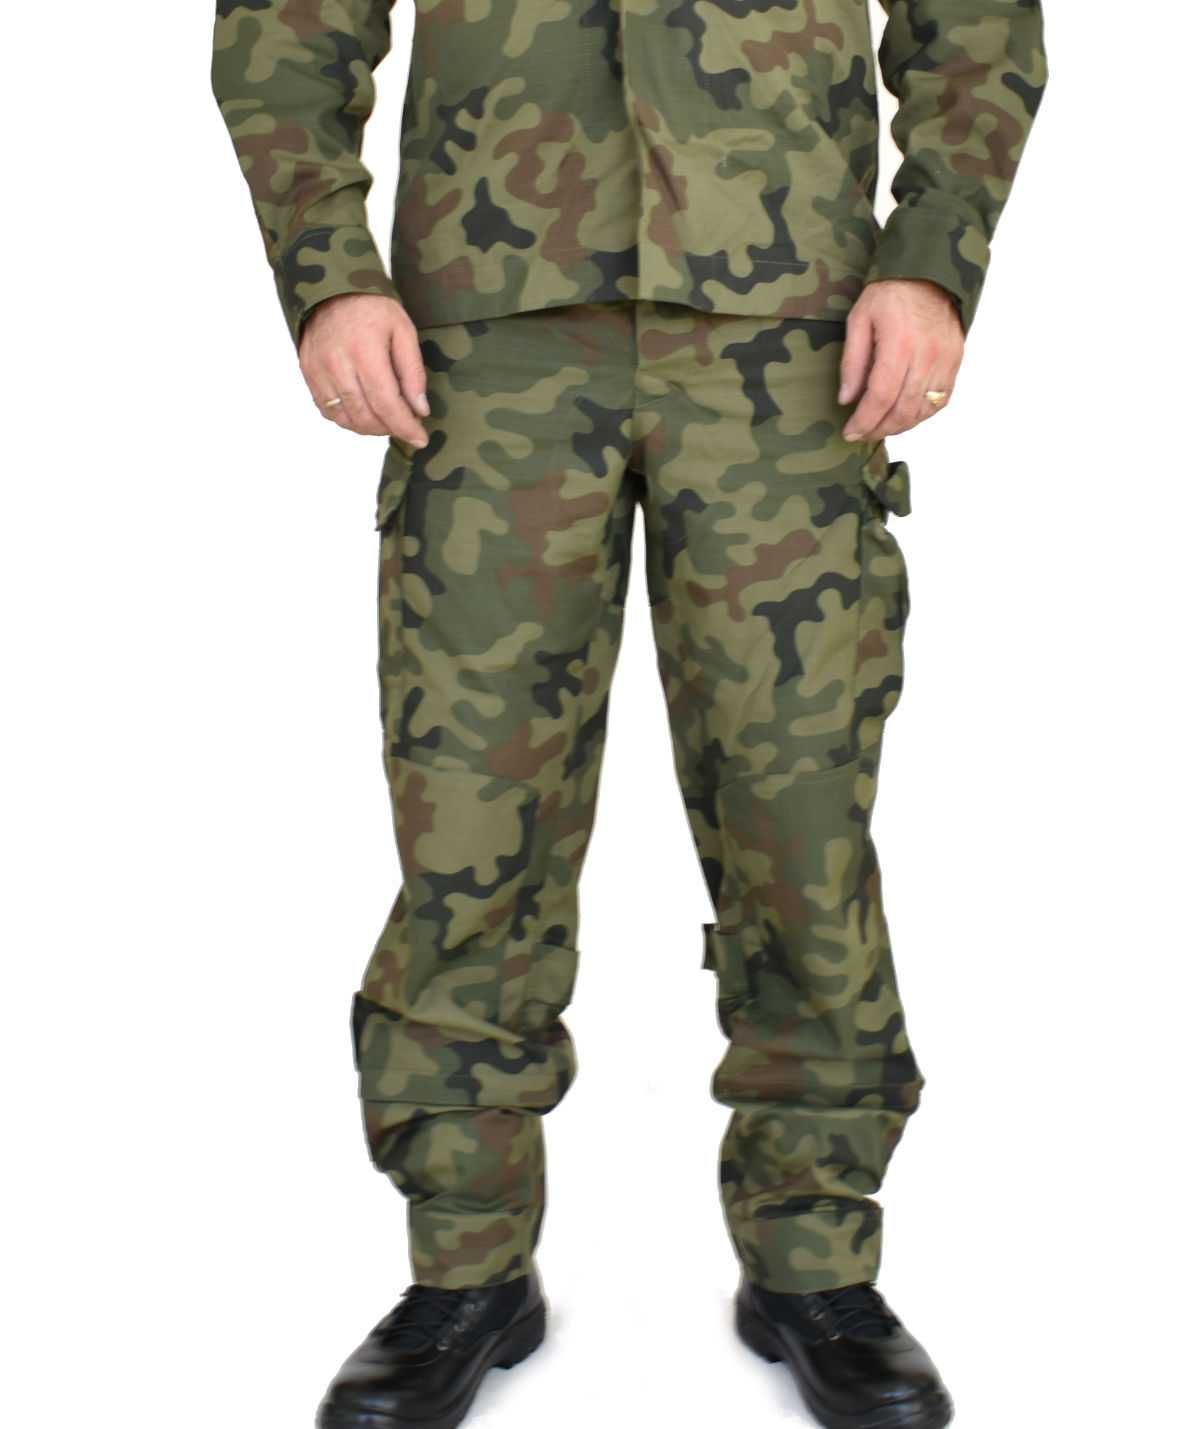 mundur polowy wz.2010 XS/XL